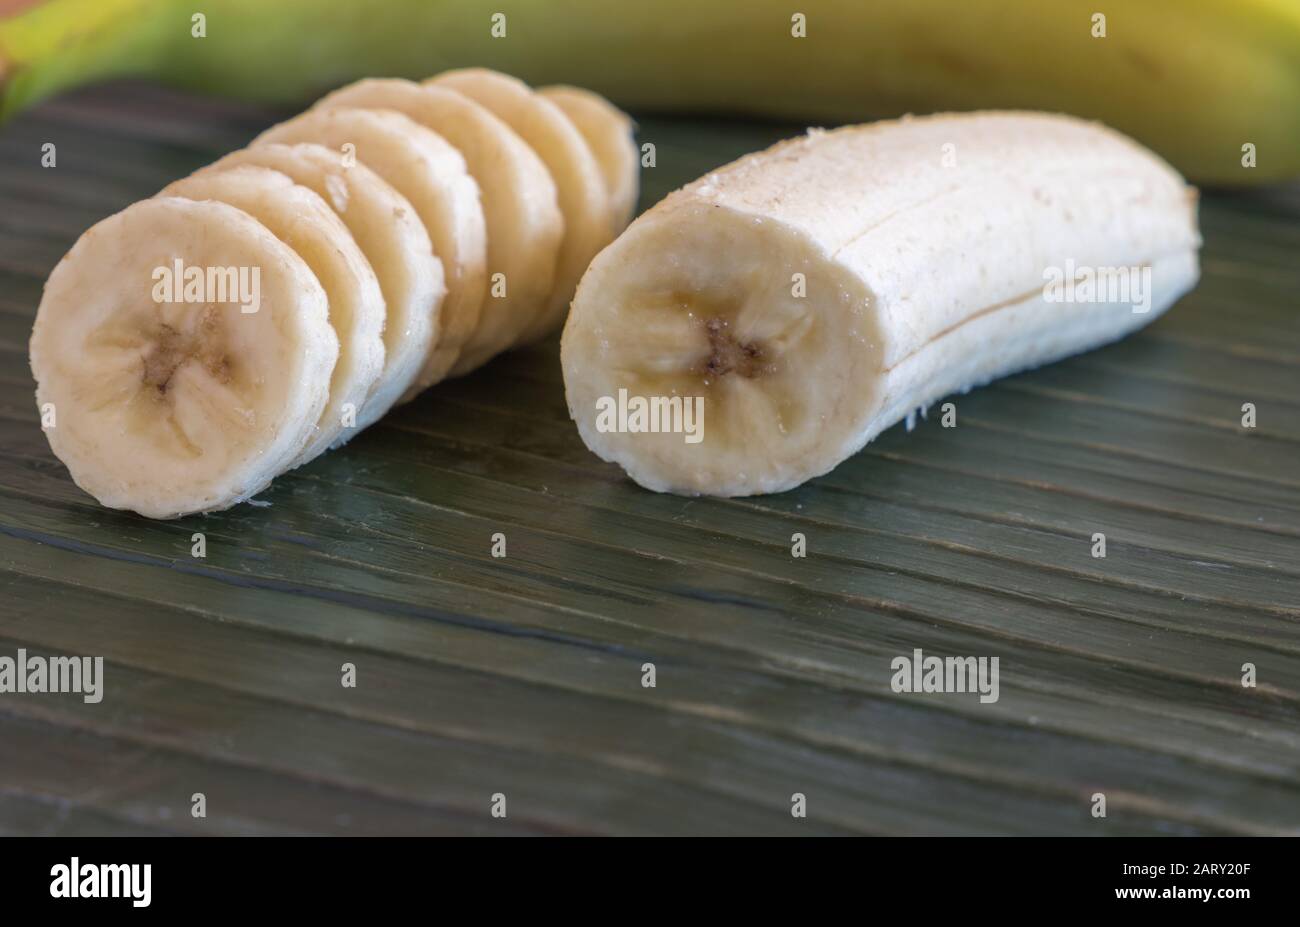 closeup of pieces of banana Stock Photo